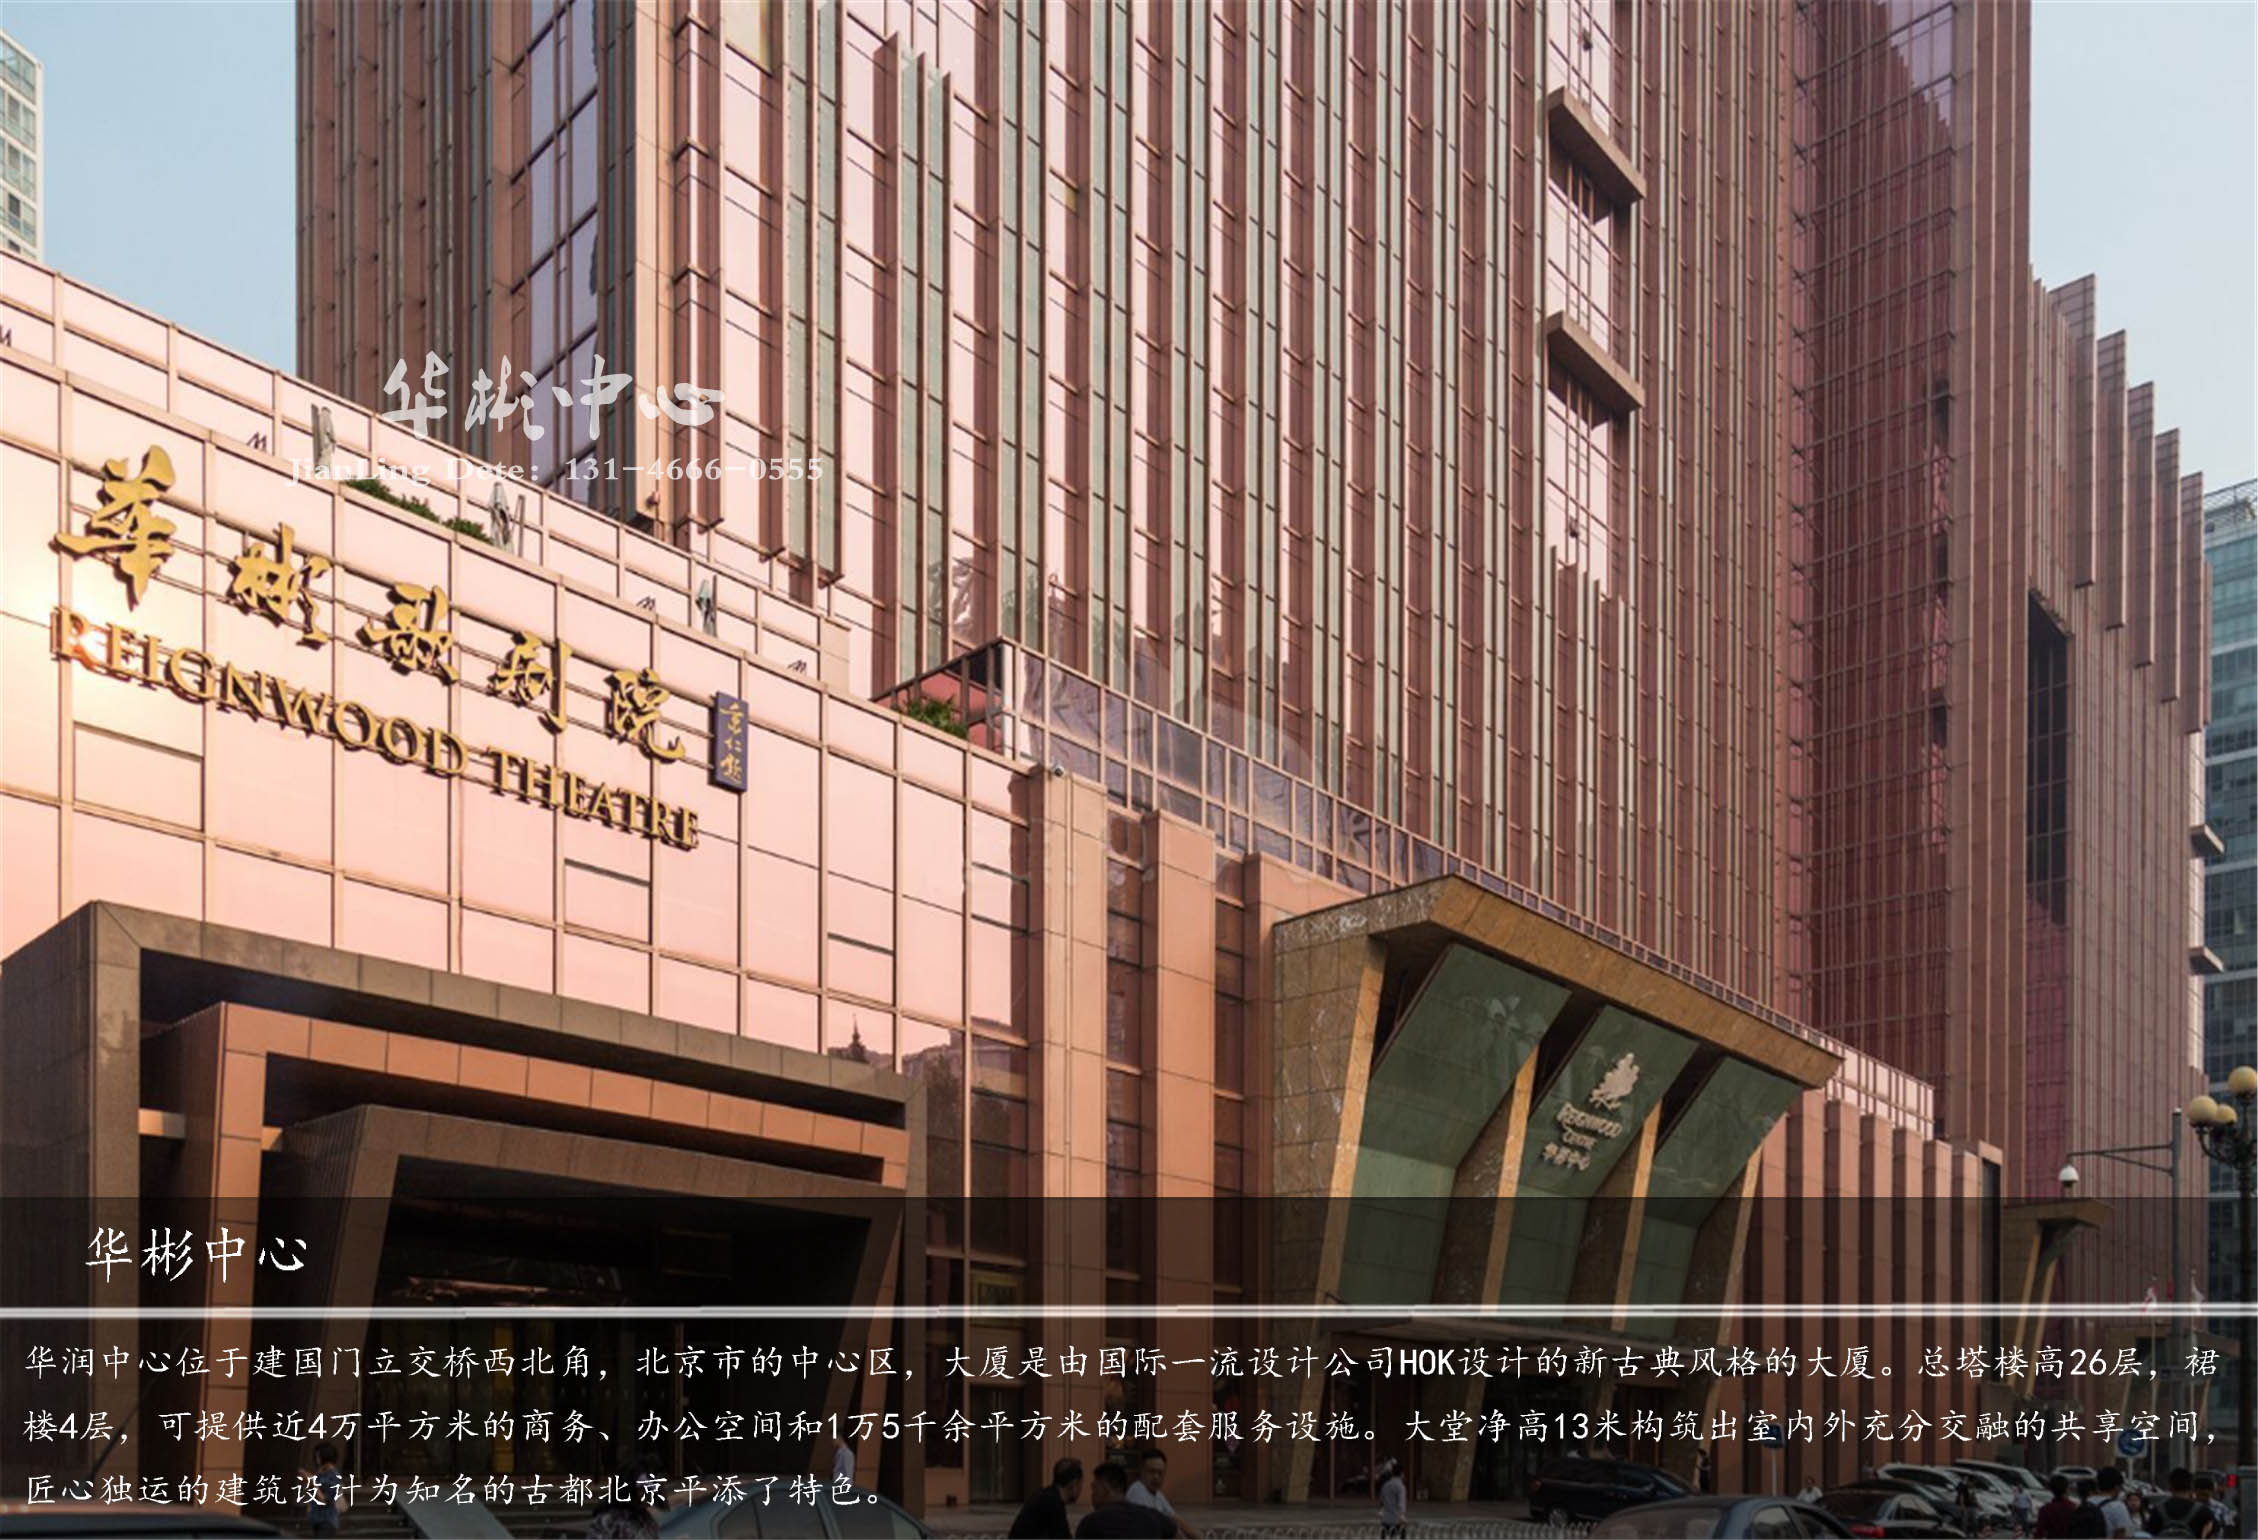 作为复合式商业综合体,这里集高级写字楼,华彬商务中心,北京华彬